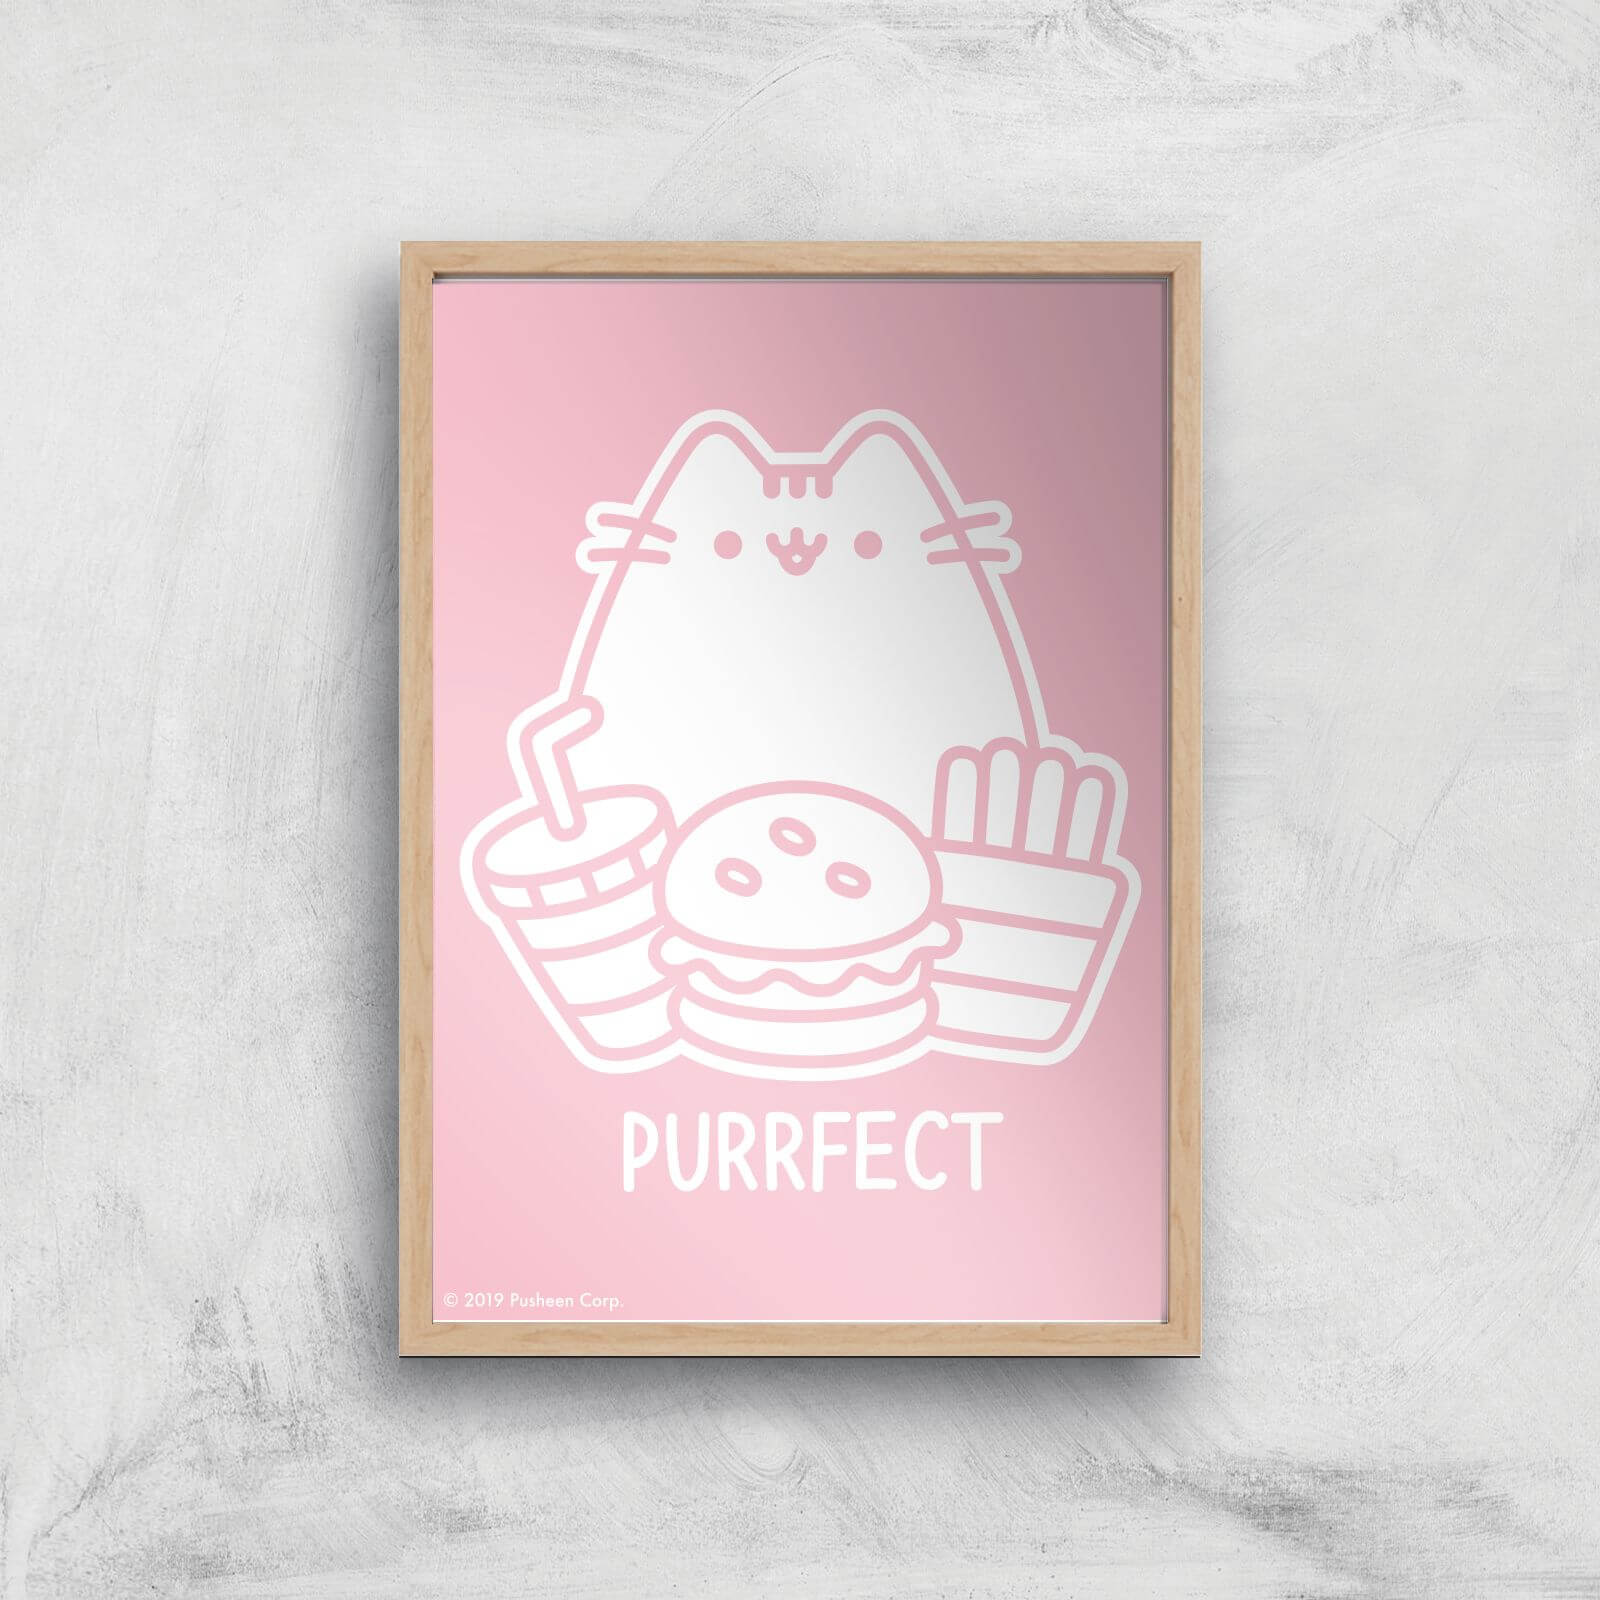 Pusheen Purrfect Junk Food Giclee Art Print - A4 - Wooden Frame